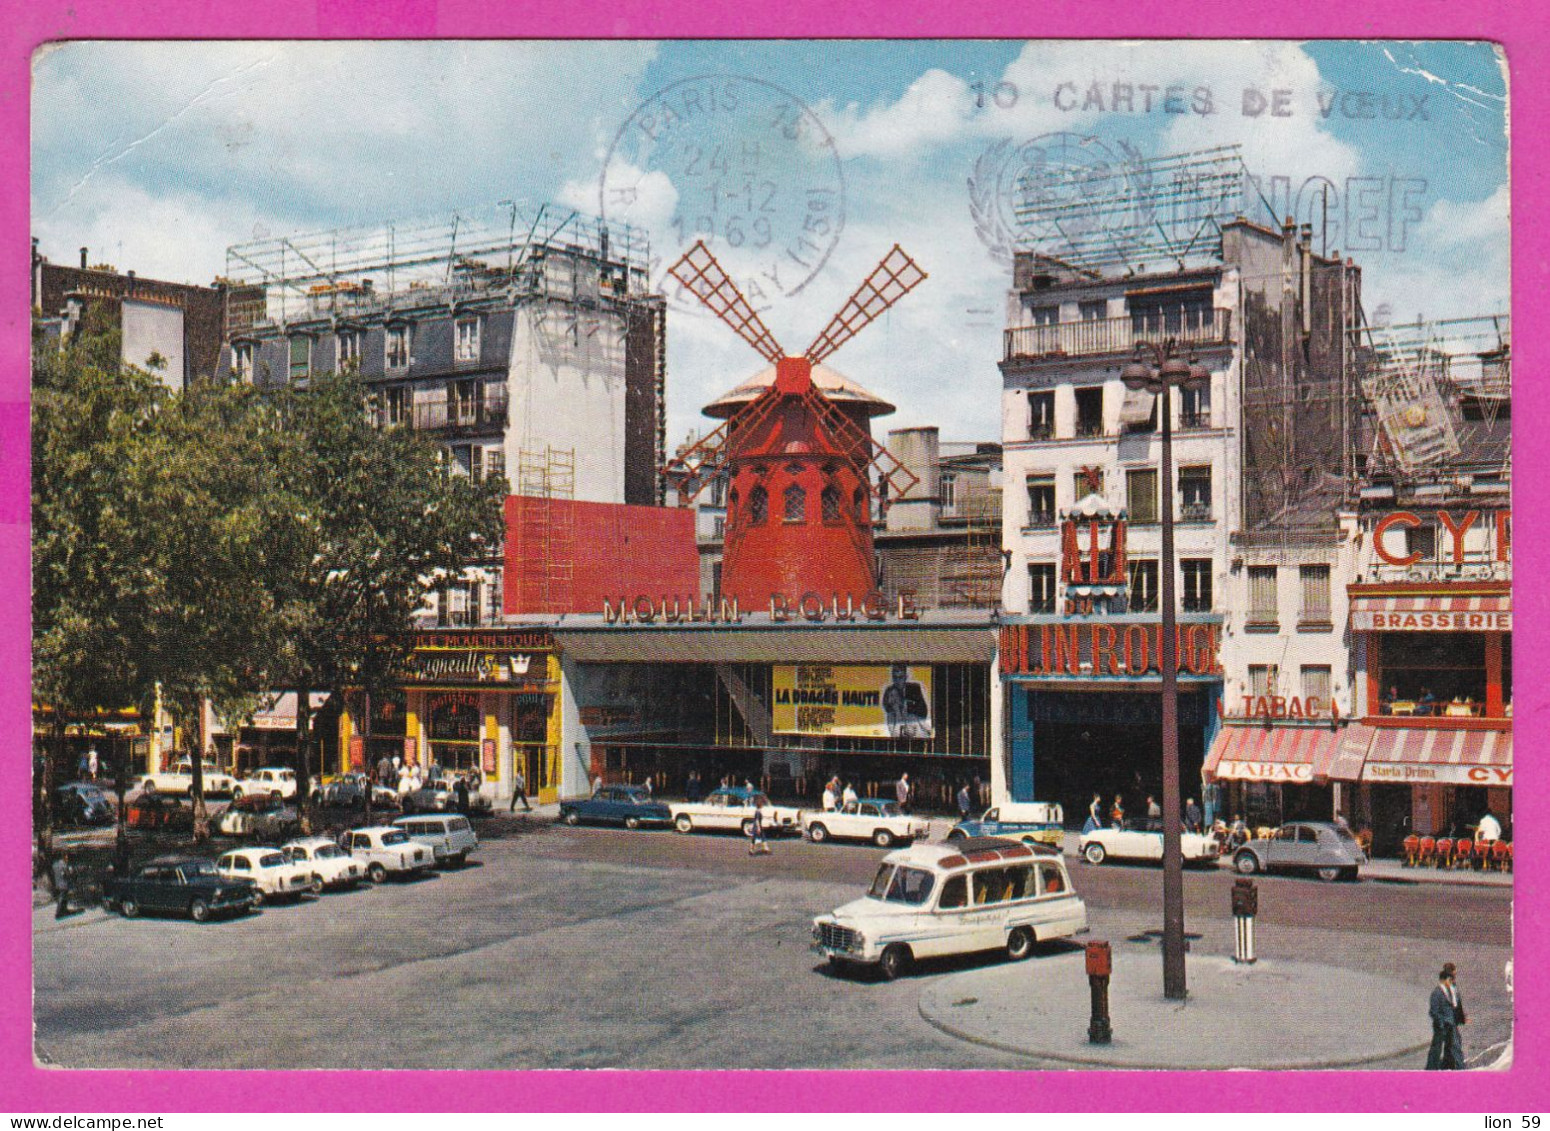 294195 / France - PARIS Moulin Rouge PC 1969 USED 0.40 Fr. Marianne De Cheffer Flamme 10 CARTES DE VOEUX UNICEF = 1 ENFA - 1967-1970 Marianne Of Cheffer